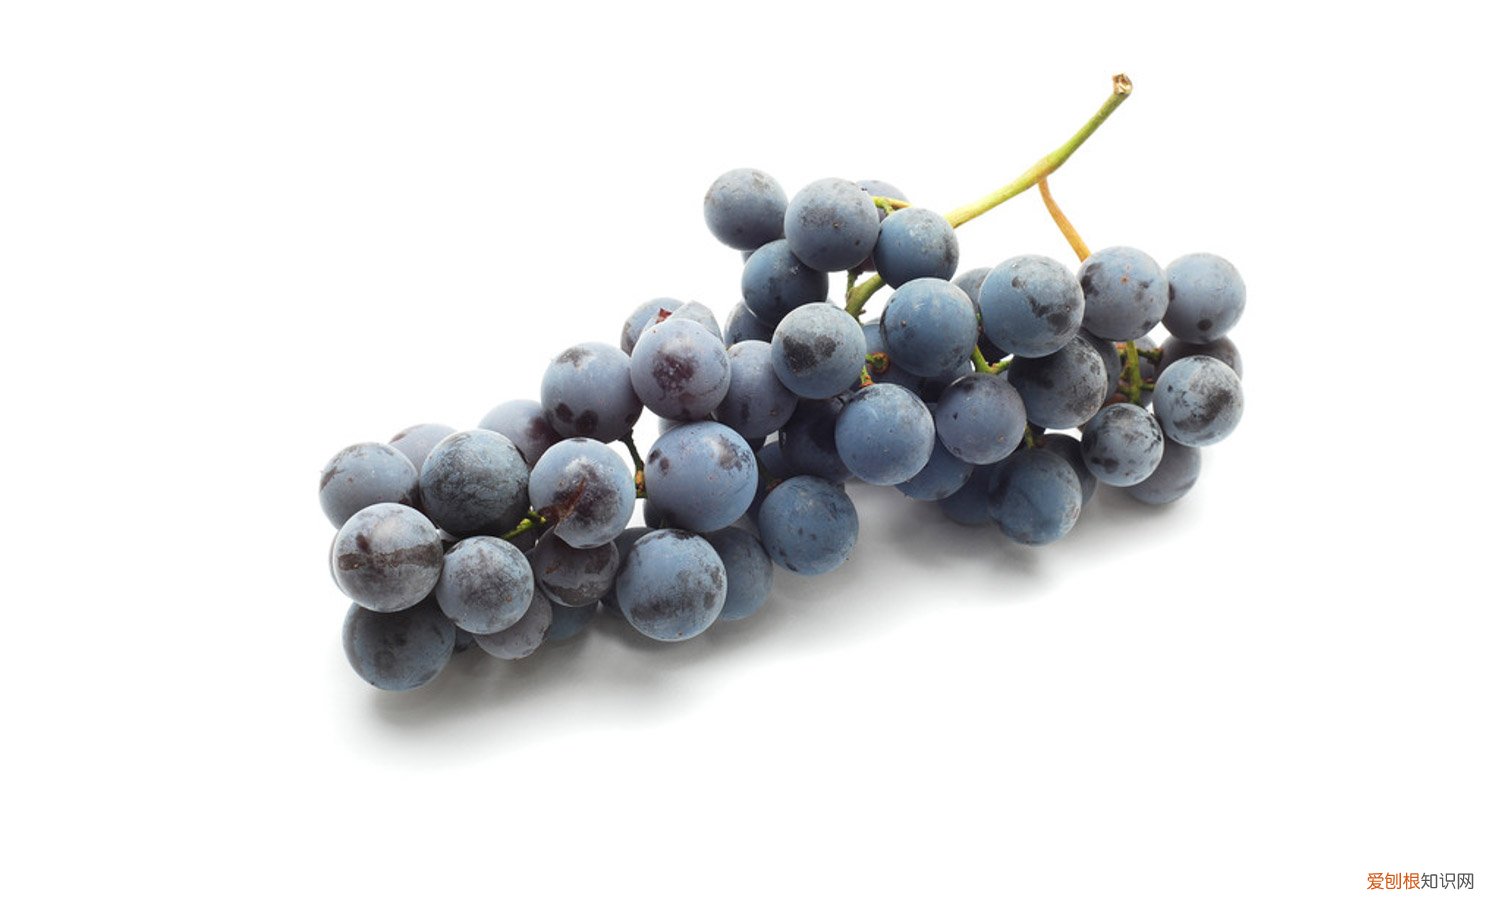 从葡萄的颜色多我推断葡萄的品种什么 葡萄有什么颜色，不同品种和成熟度颜色不同